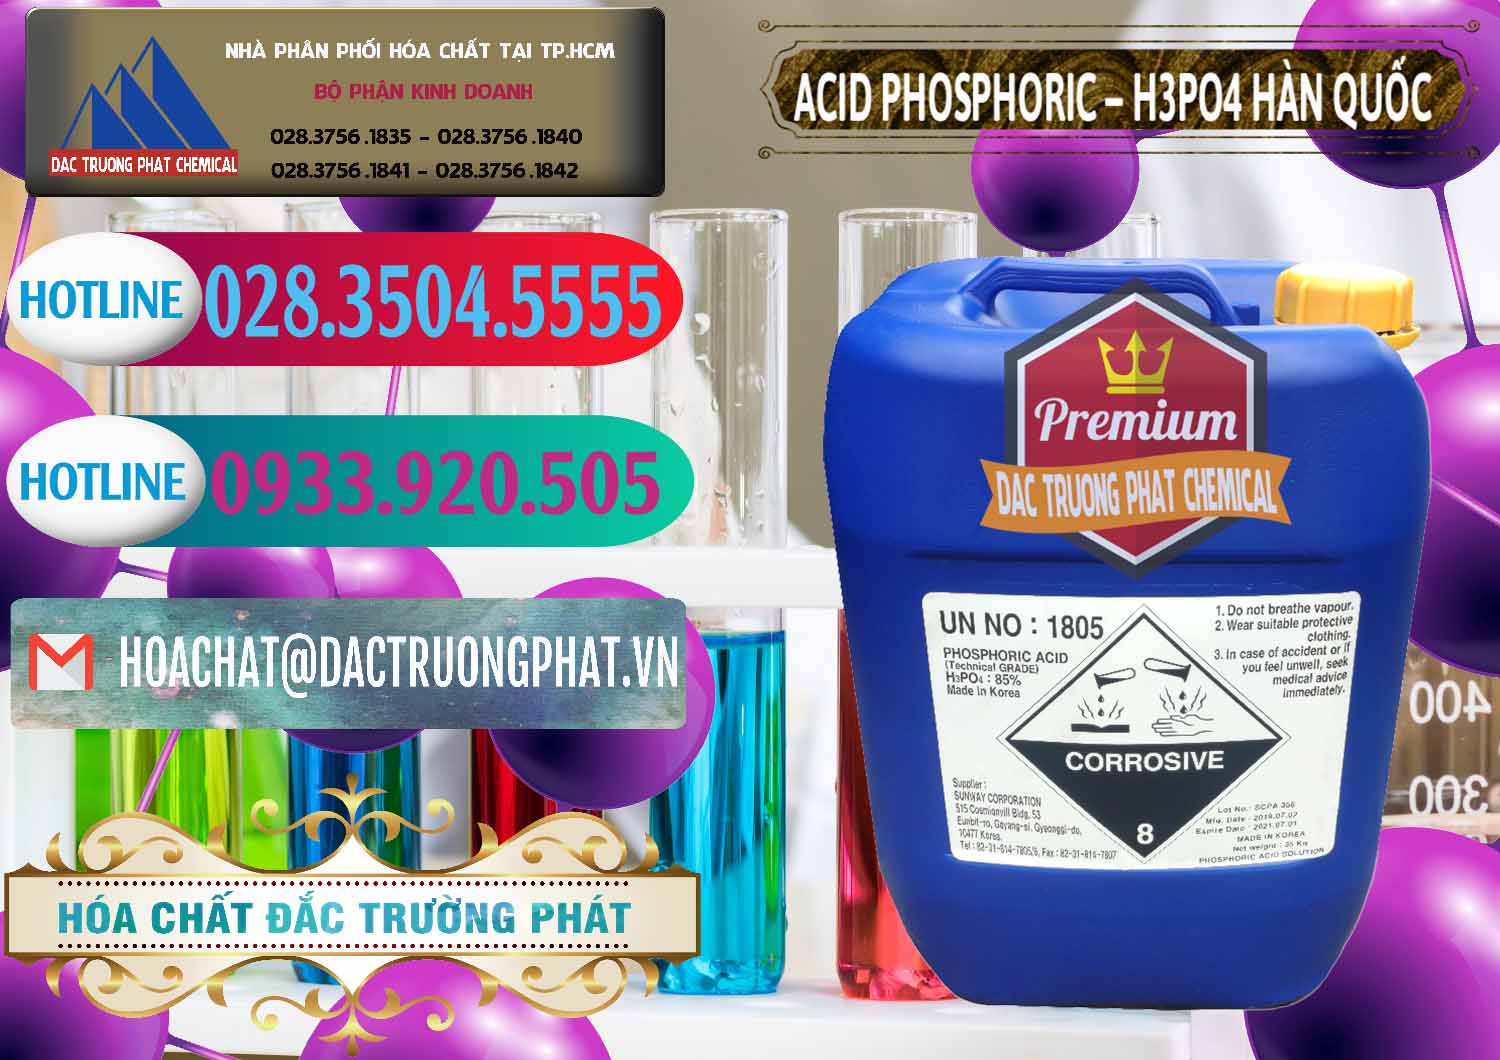 Cty chuyên cung cấp _ bán Acid Phosphoric – H3PO4 85% Can Xanh Hàn Quốc Korea - 0016 - Đơn vị chuyên phân phối _ nhập khẩu hóa chất tại TP.HCM - truongphat.vn